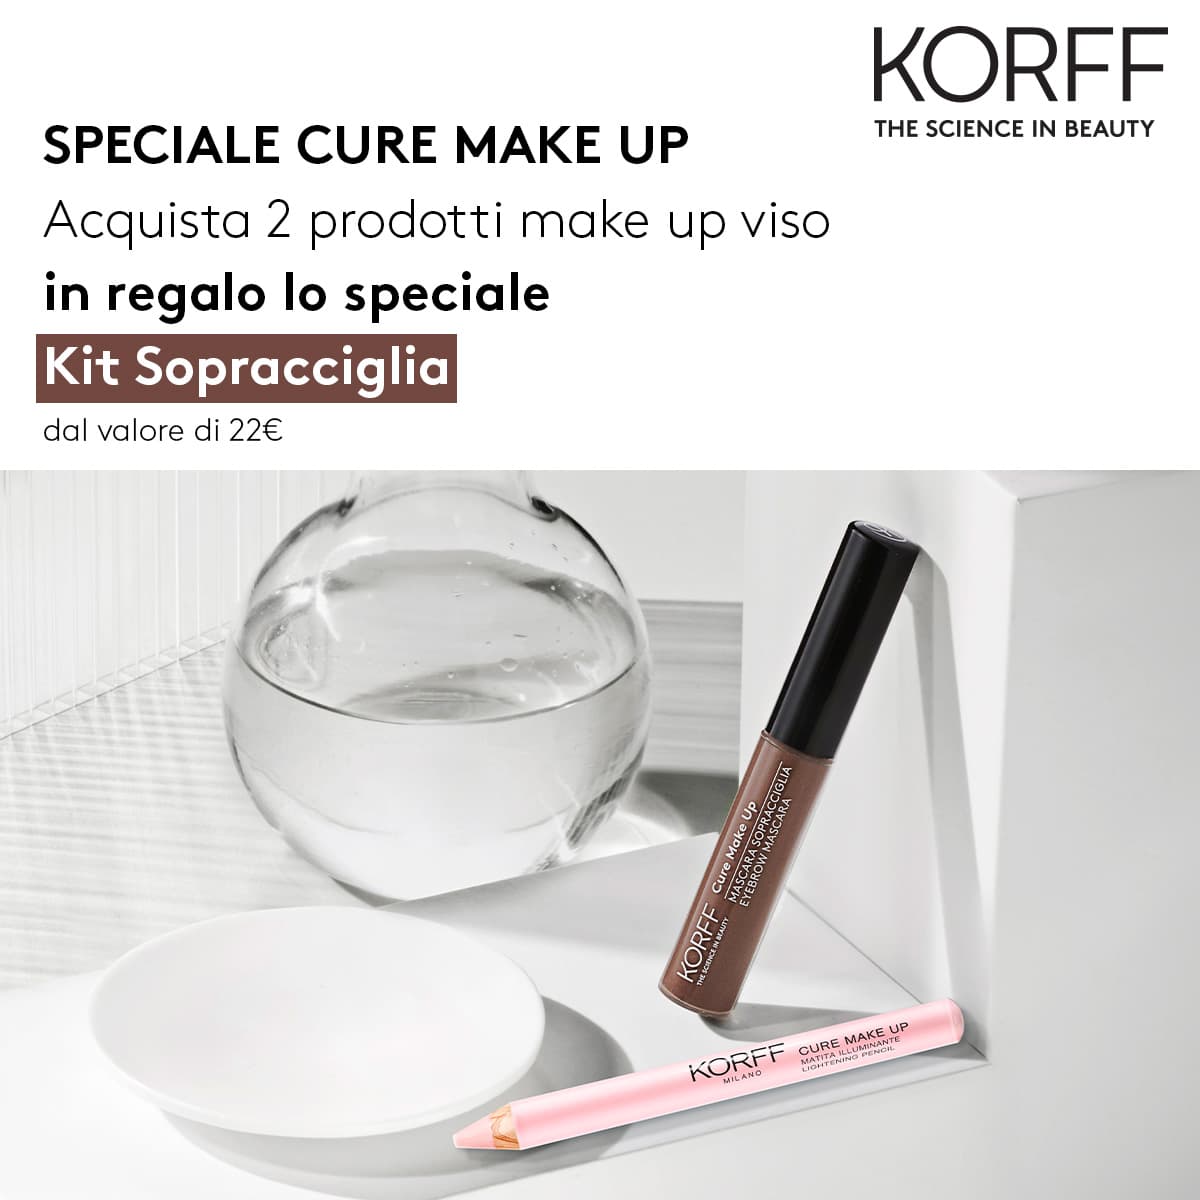 Acquista 2 prodotti Korff Make-Up viso e ricevi in regalo lo speciale Kit Sopracciglia con mascara + matita illuminante!